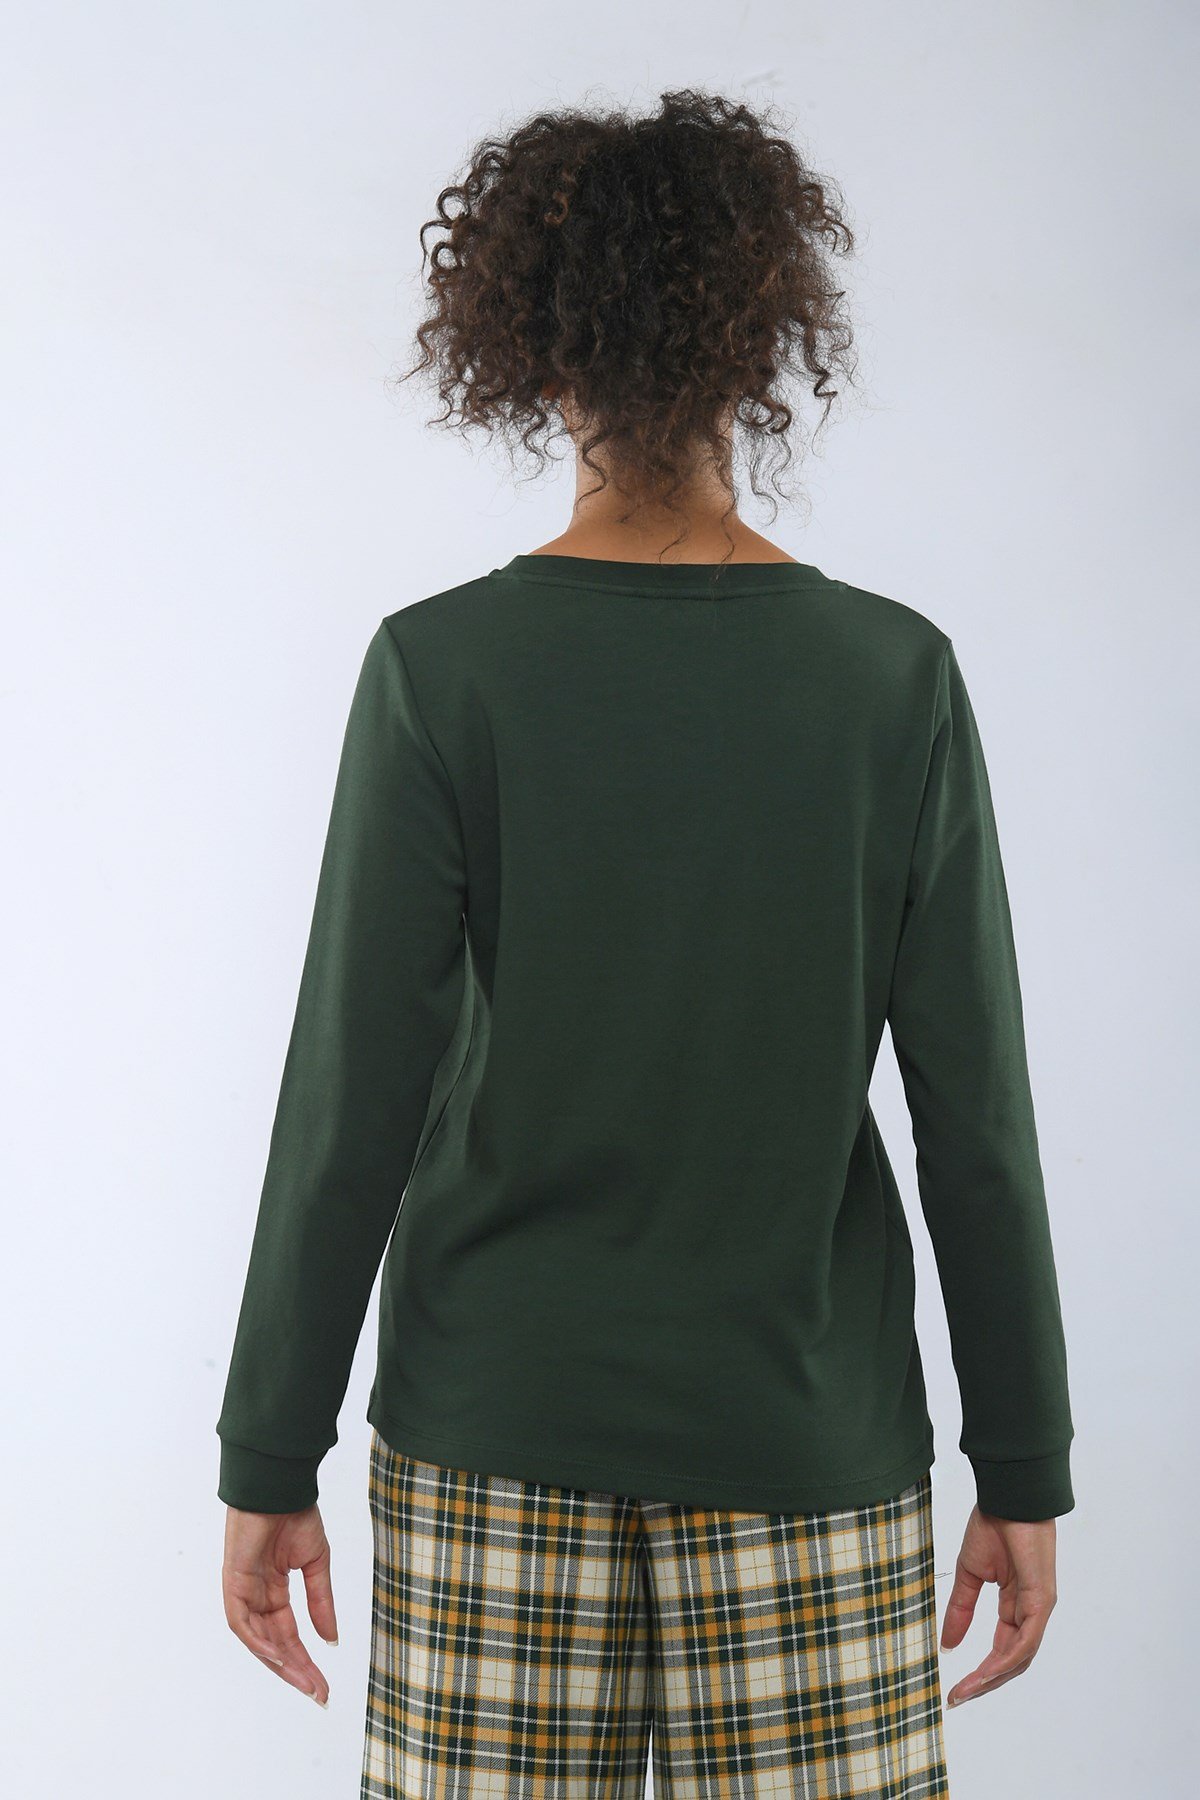 Farmville Kadın Sweatshirt Yeşil